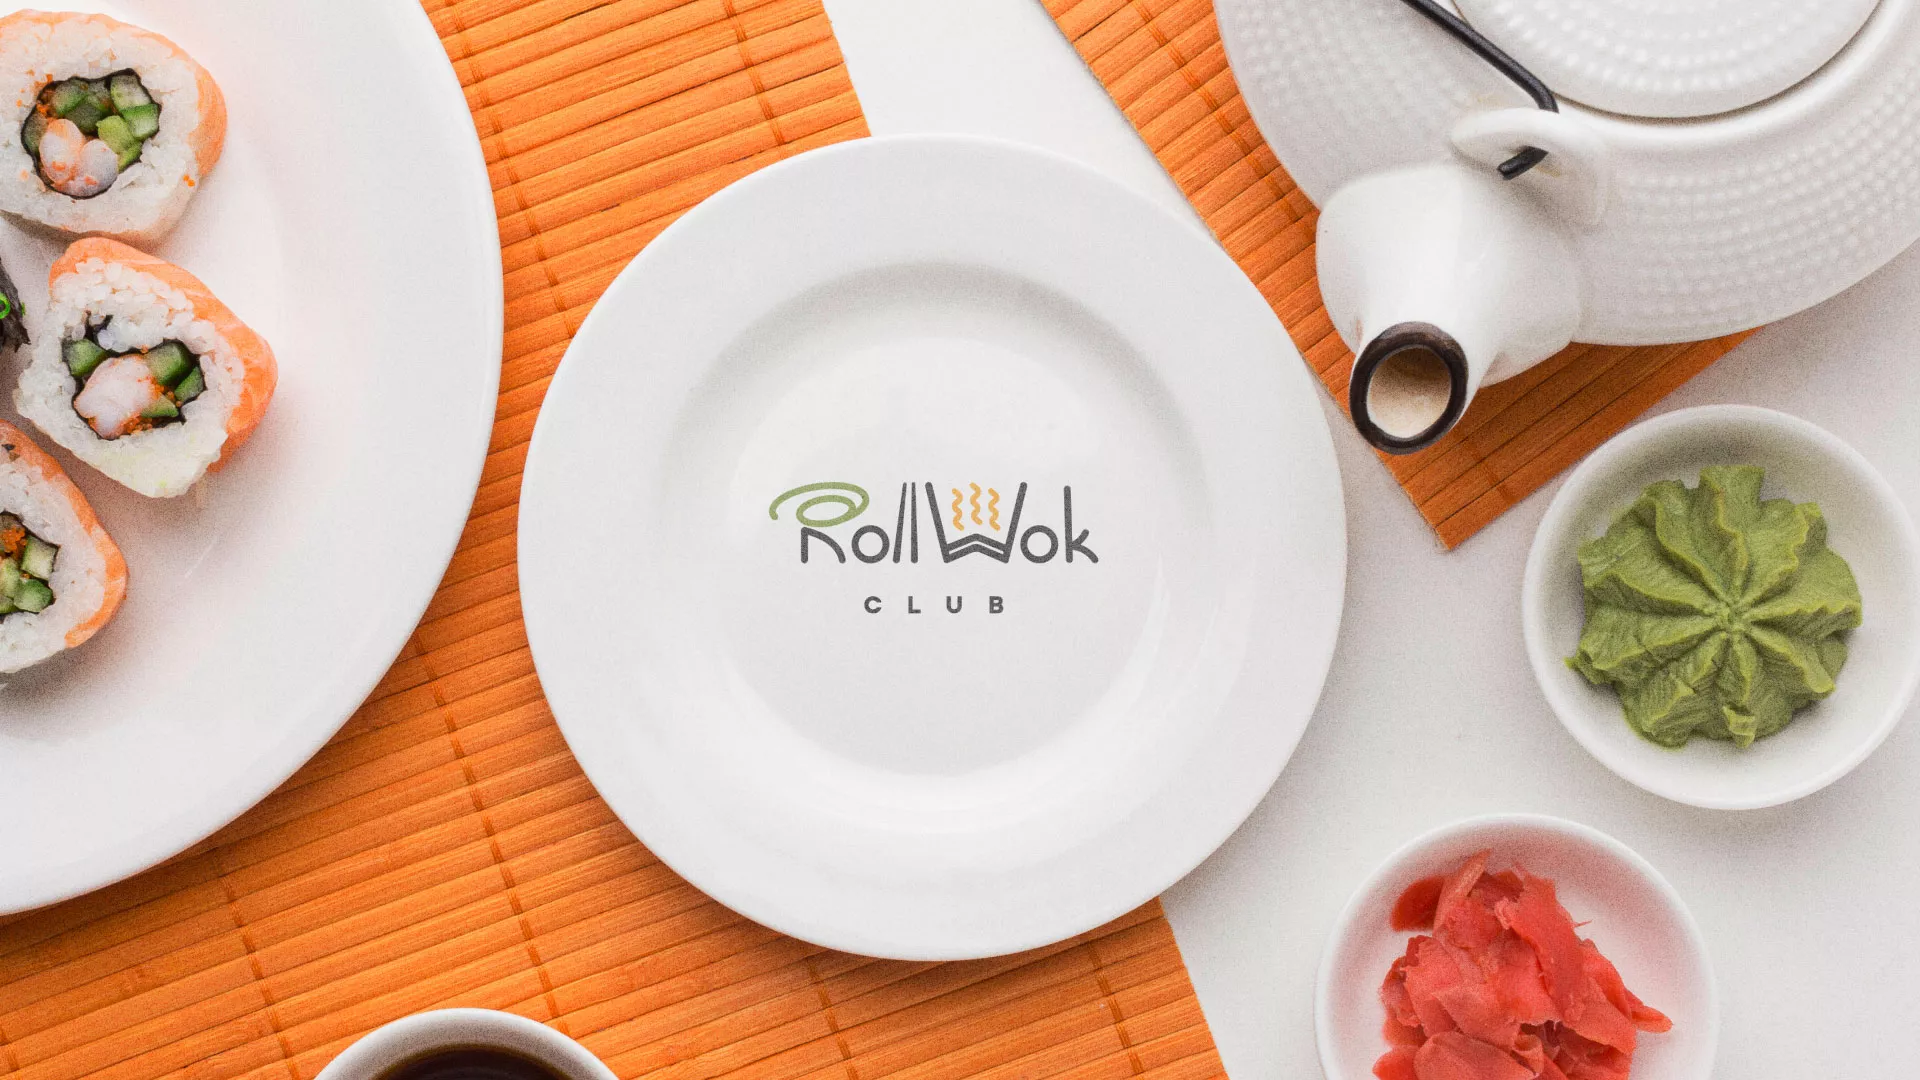 Разработка логотипа и фирменного стиля суши-бара «Roll Wok Club» в Балашихе